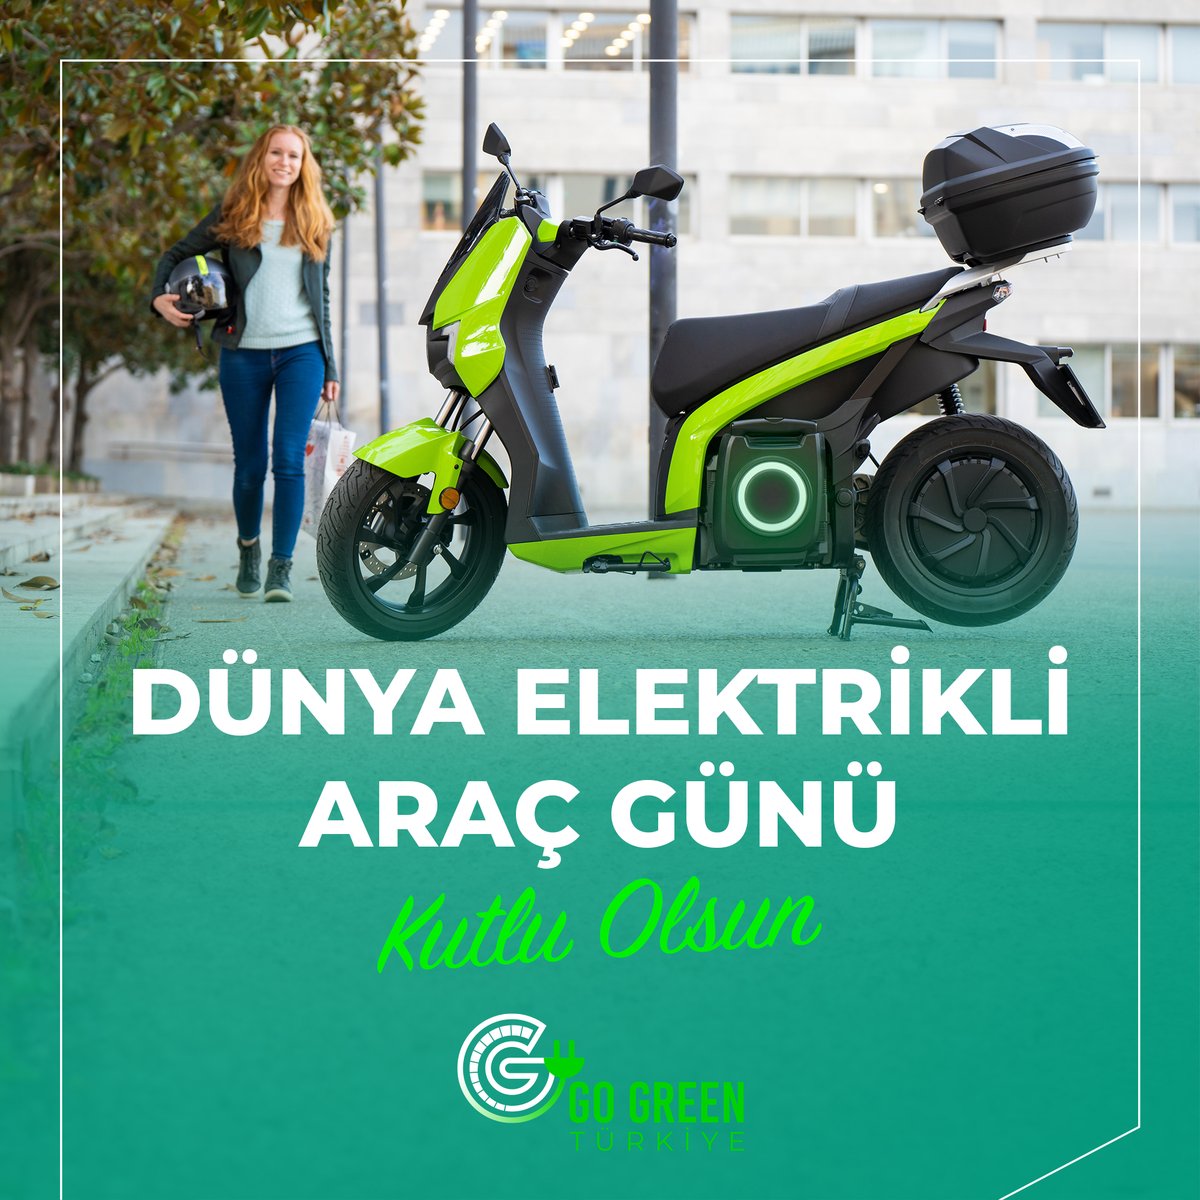 Sürdürülebilir yaşam ve çevre için sıfır emisyon hedefiyle çıktığımız bu yolda Go Green Türkiye olarak elektrikli araç ve şarj teknolojilerinin gelişmesini önemsiyoruz.
Dünya Elektrikli Araç Günü kutlu olsun!

#gogreentürkiye #DünyaElektrikliAraçGünü